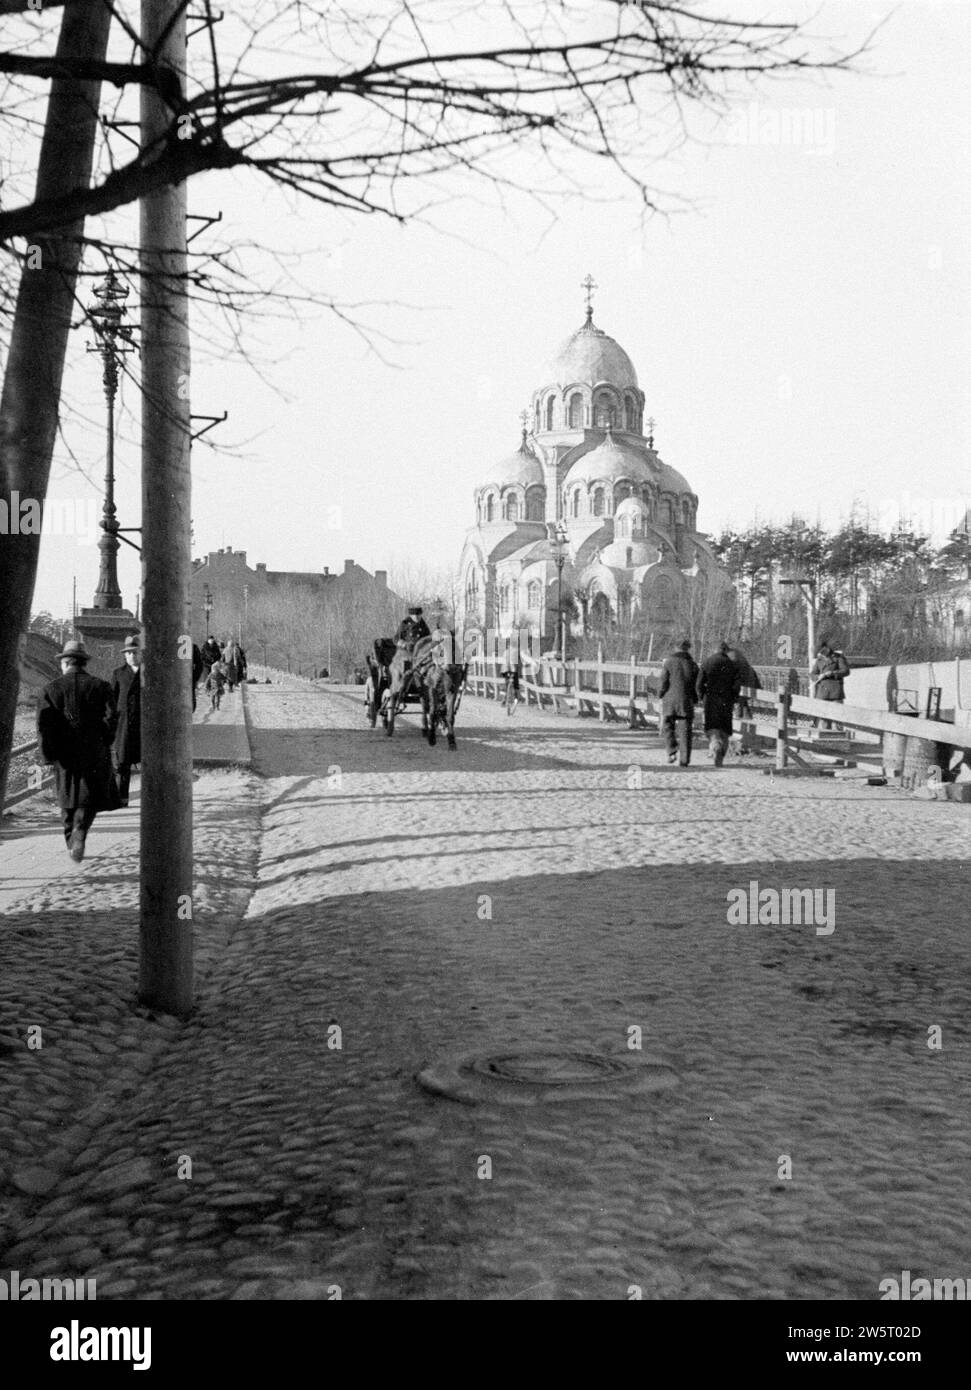 Vilnius. Chiesa ortodossa dell'apparizione della madre di Dio (Znamenskaya) vicino al ponte di Zverynas sul fiume Neris. Una carrozza sul ponte ca. 1934 Foto Stock